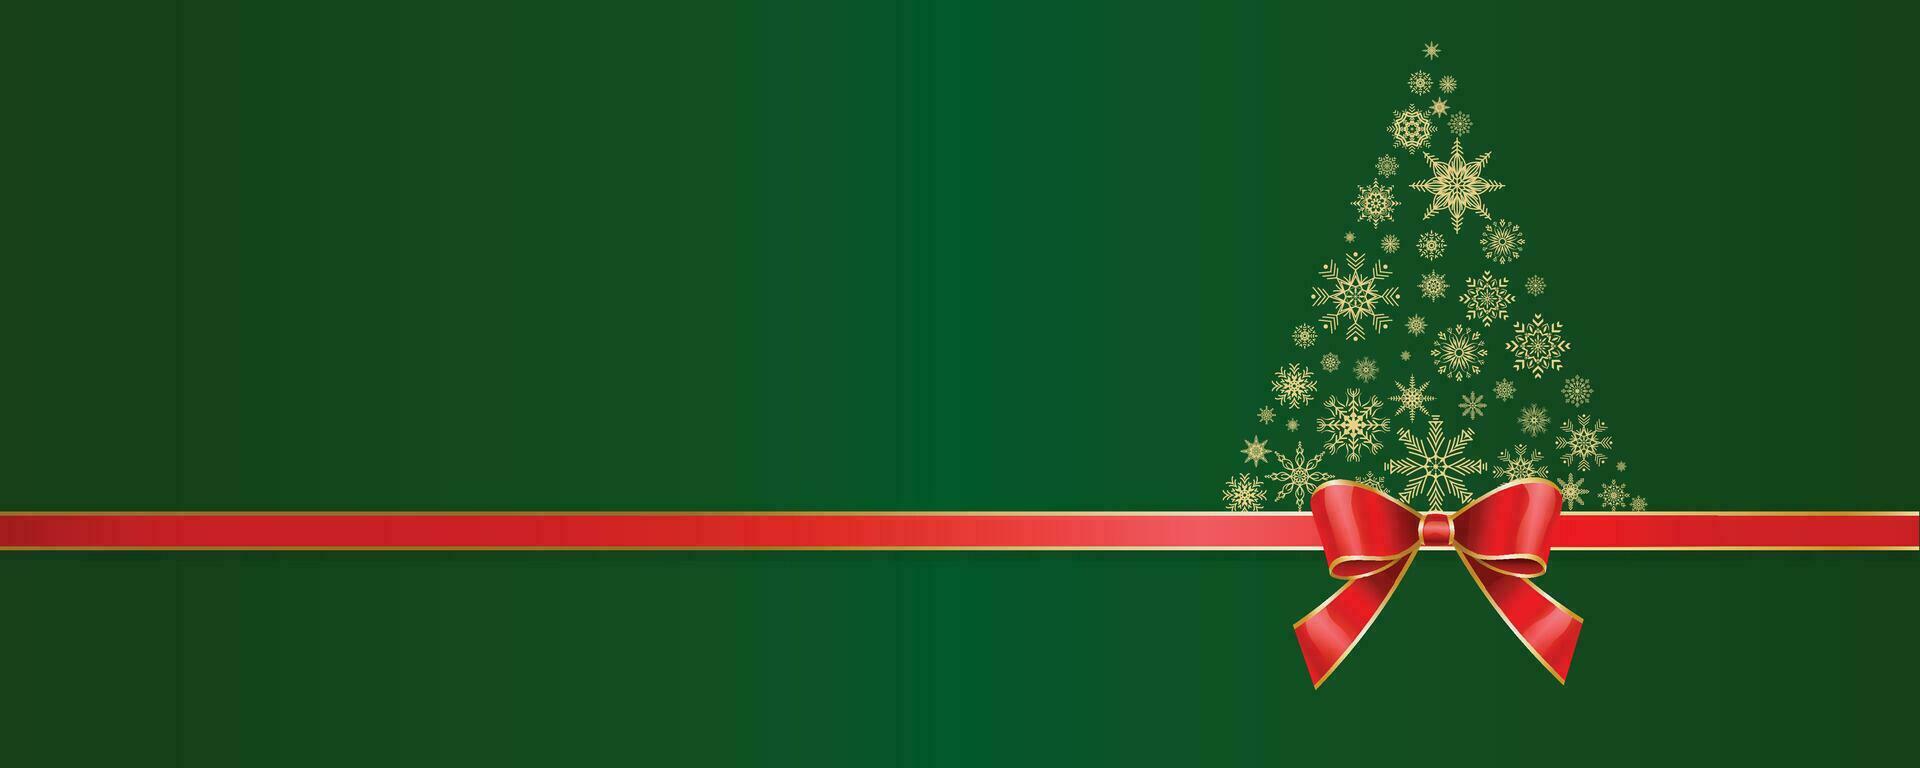 Kerstmis groen achtergrond met rood lint en sneeuw vlokken vector